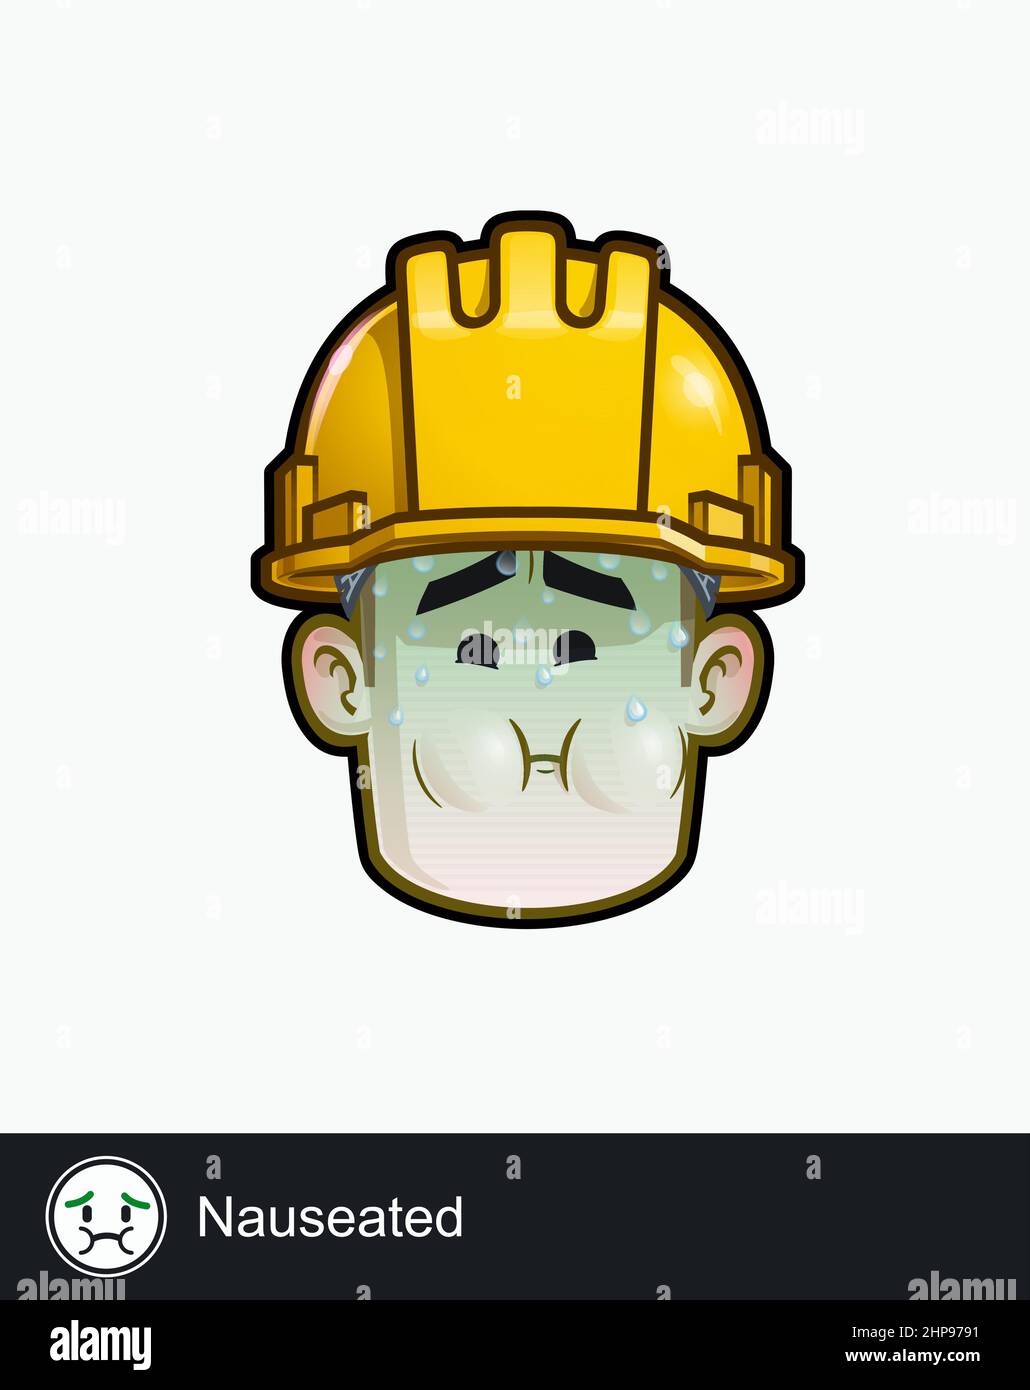 Ikone eines Bauarbeiters mit übelem emotionalen Ausdruck. Alle Elemente übersichtlich auf gut beschriebenen Ebenen und Gruppen. Stock Vektor